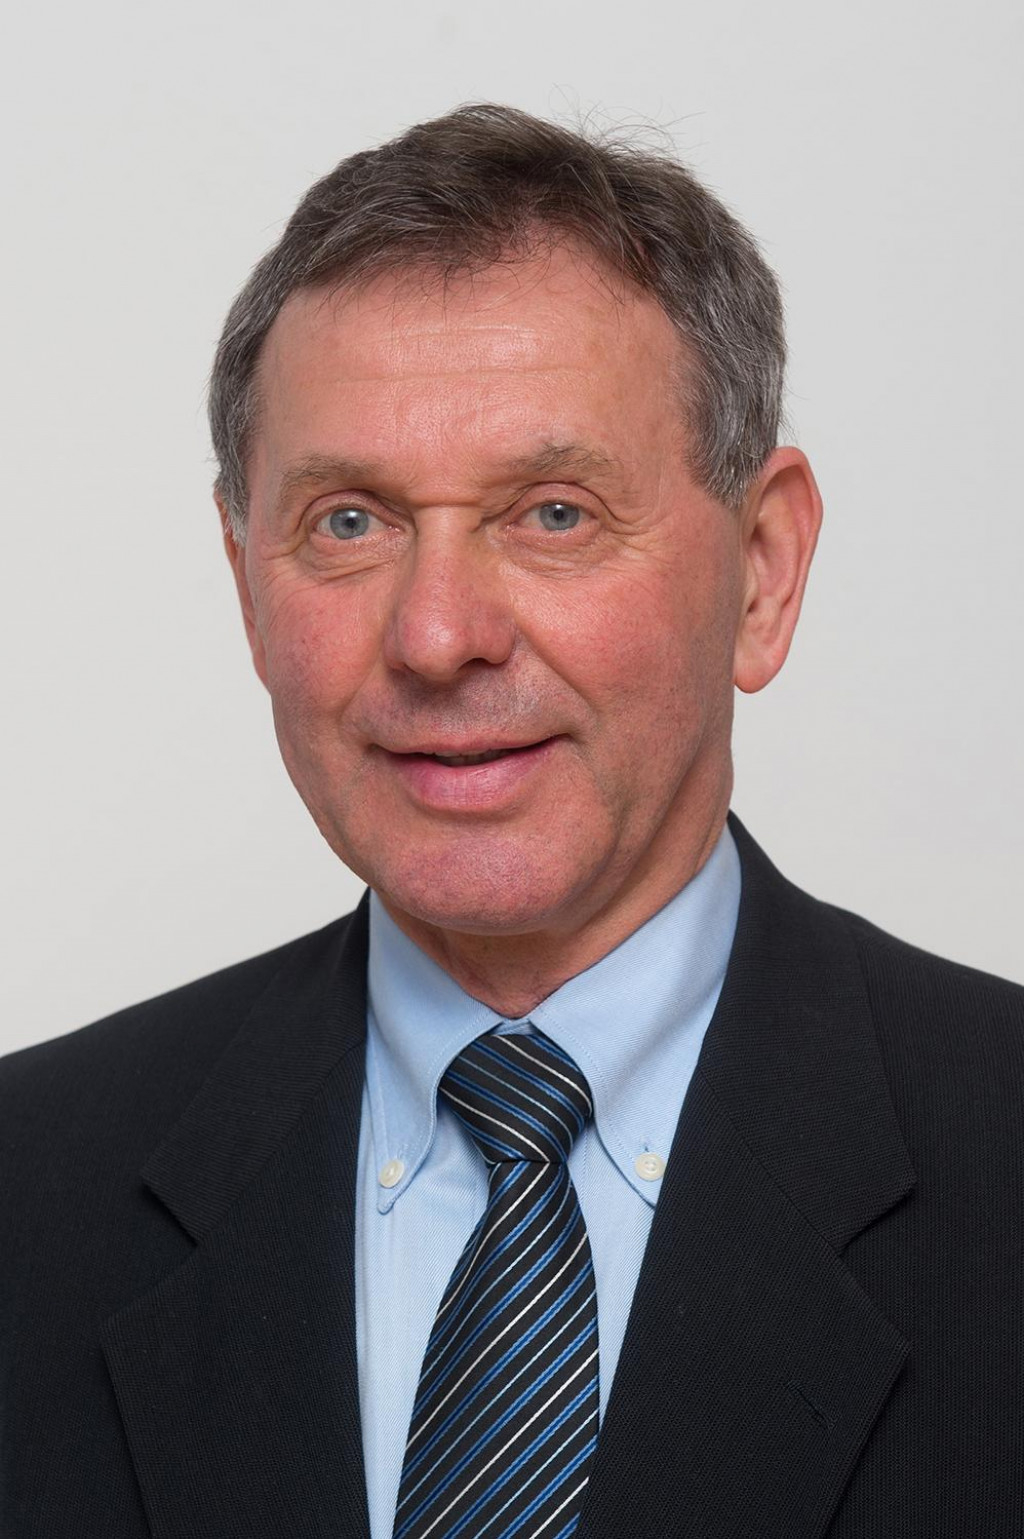 Juraj SIPKO, akademik a bývalý člen Európskeho ekonomického a sociálneho výboru. FOTO: Eesc